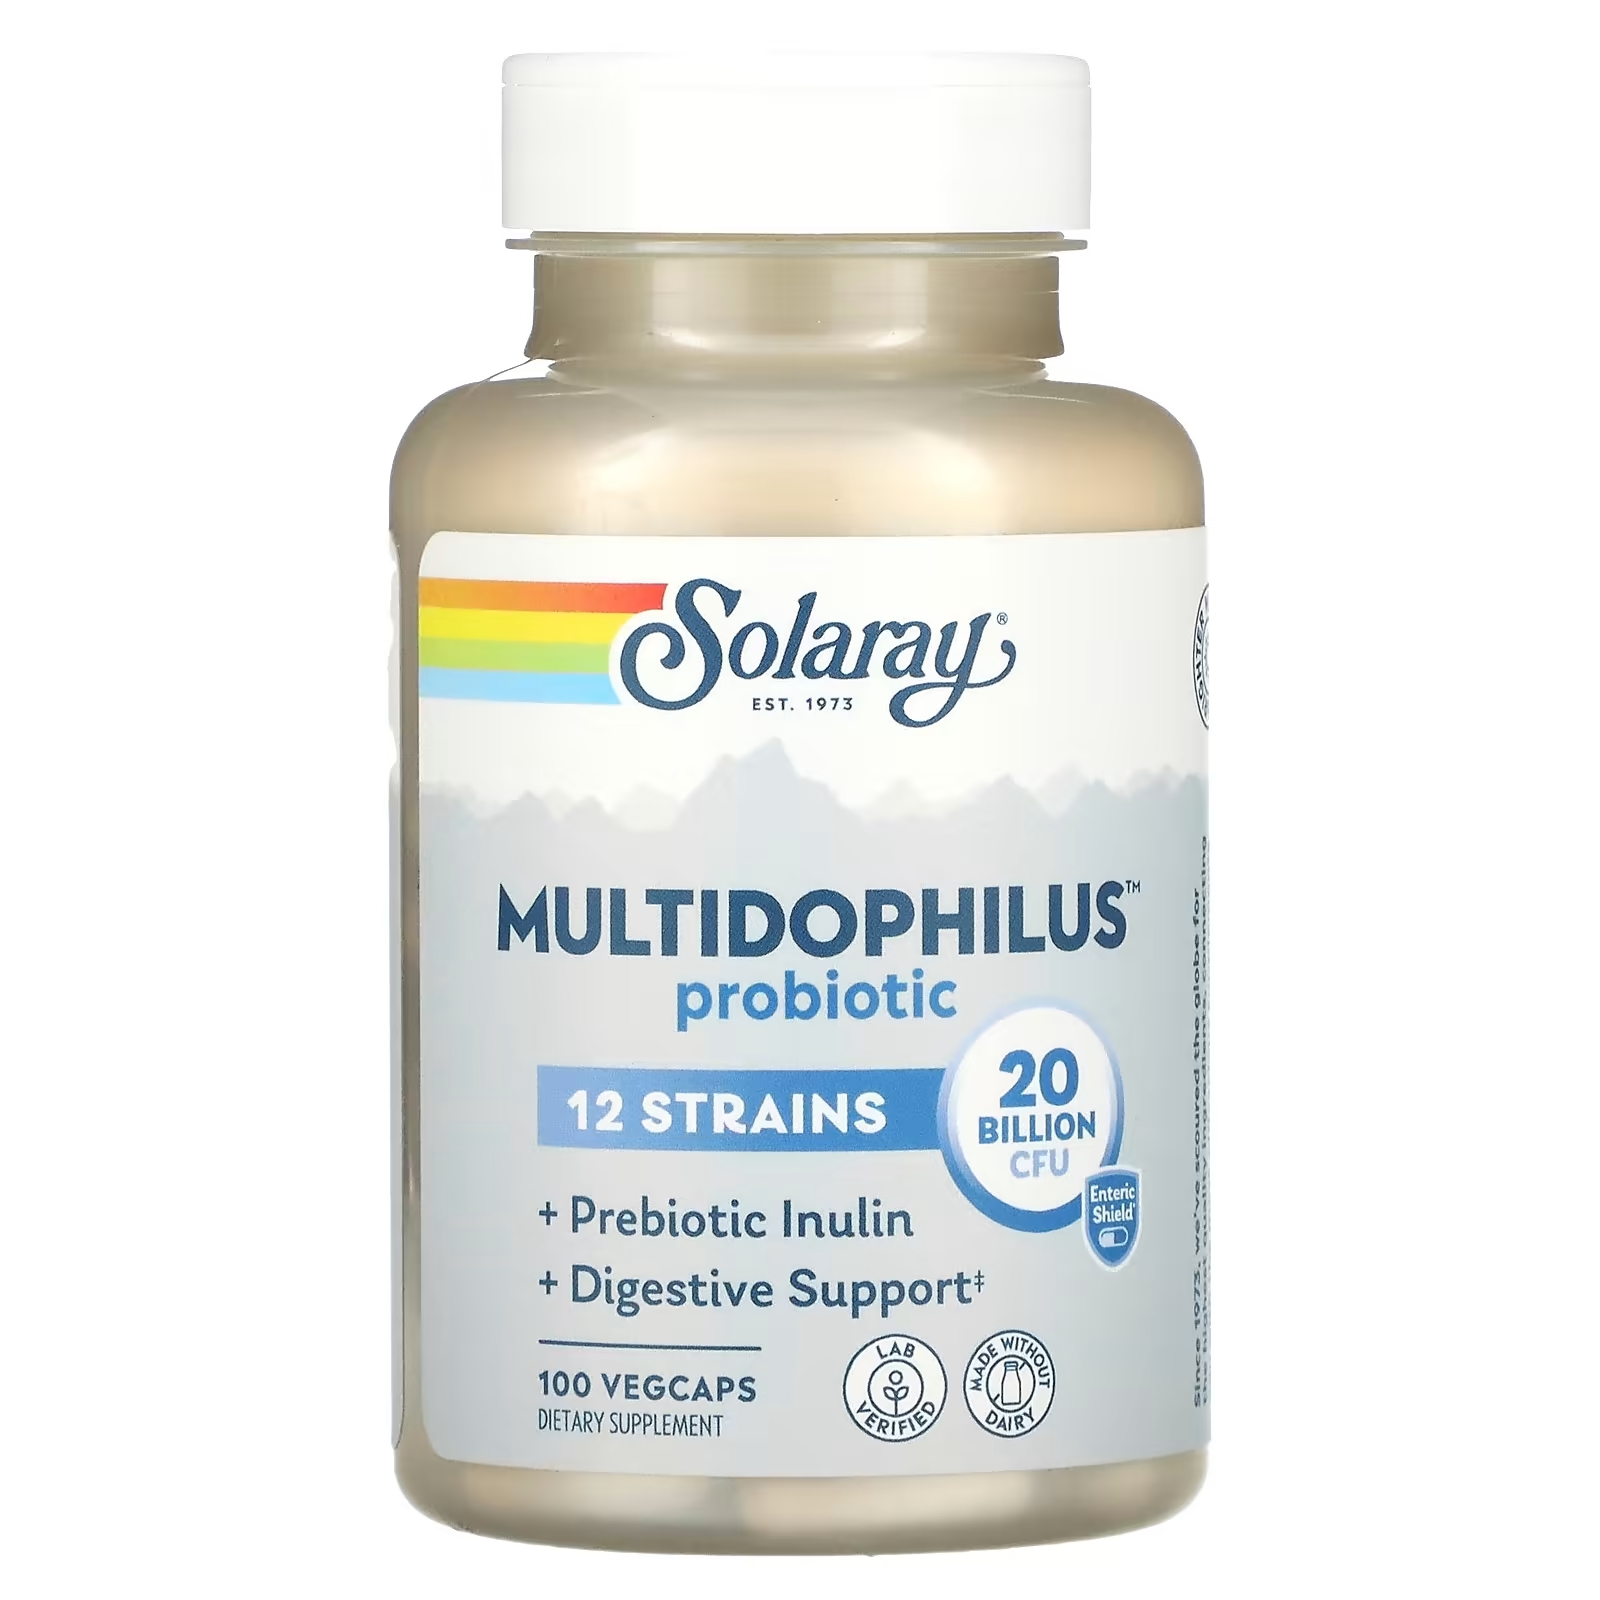 solaray mycrobiome probiotic weight formula 50 млрд 30 капсул с кишечным растительным экстрактом Solaray Multidophilus Probiotic пробиотик 20 млрд КОЕ, 100 вегетарианских капсул VegCaps